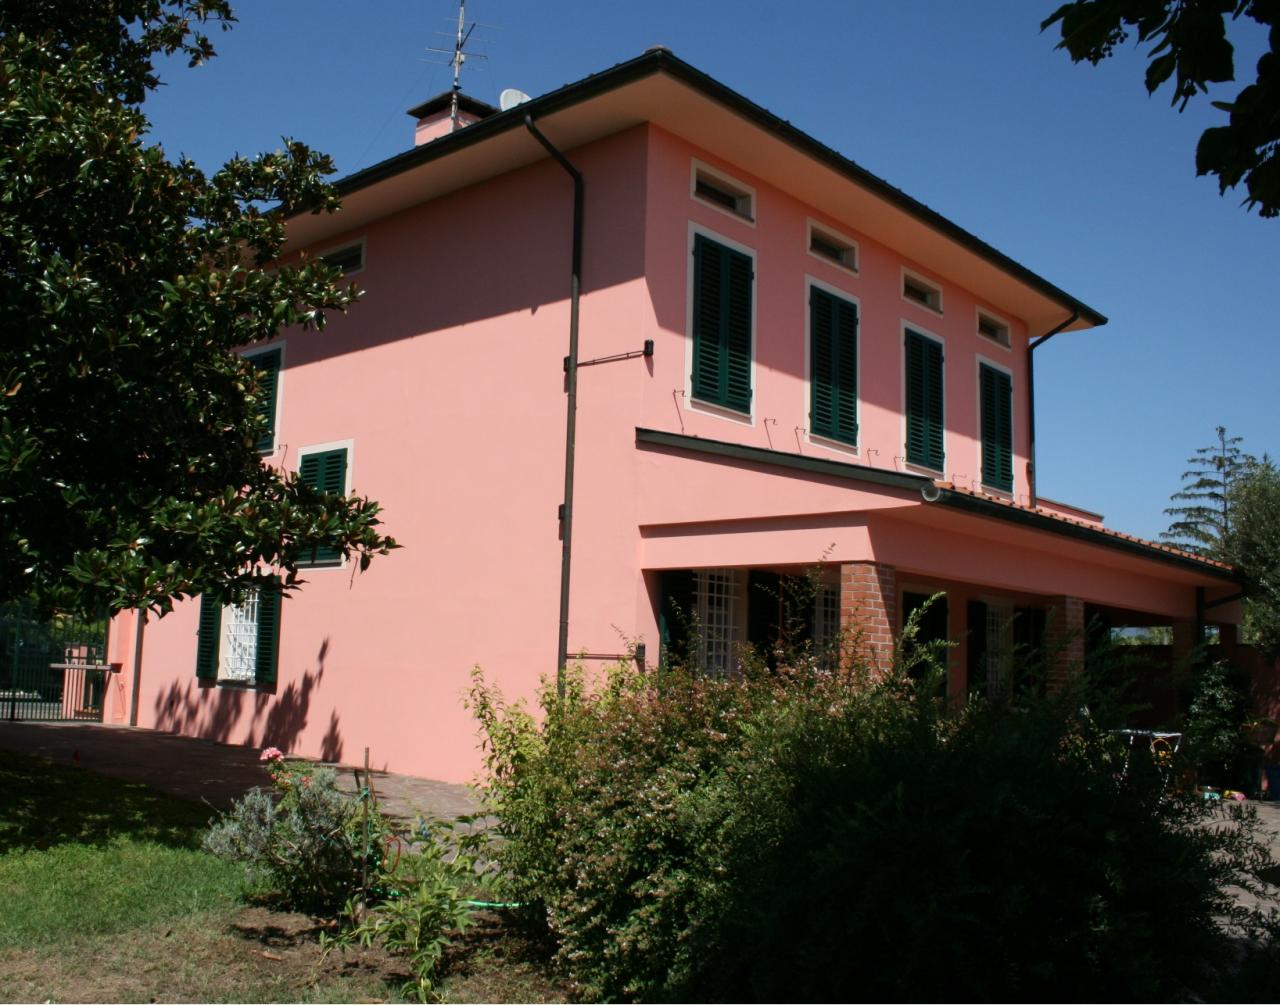 350-Villa unifamiliare di grande metratura con giardino a pochi chilometri da Lucca-Capannori-1 Agenzia Immobiliare ASIP